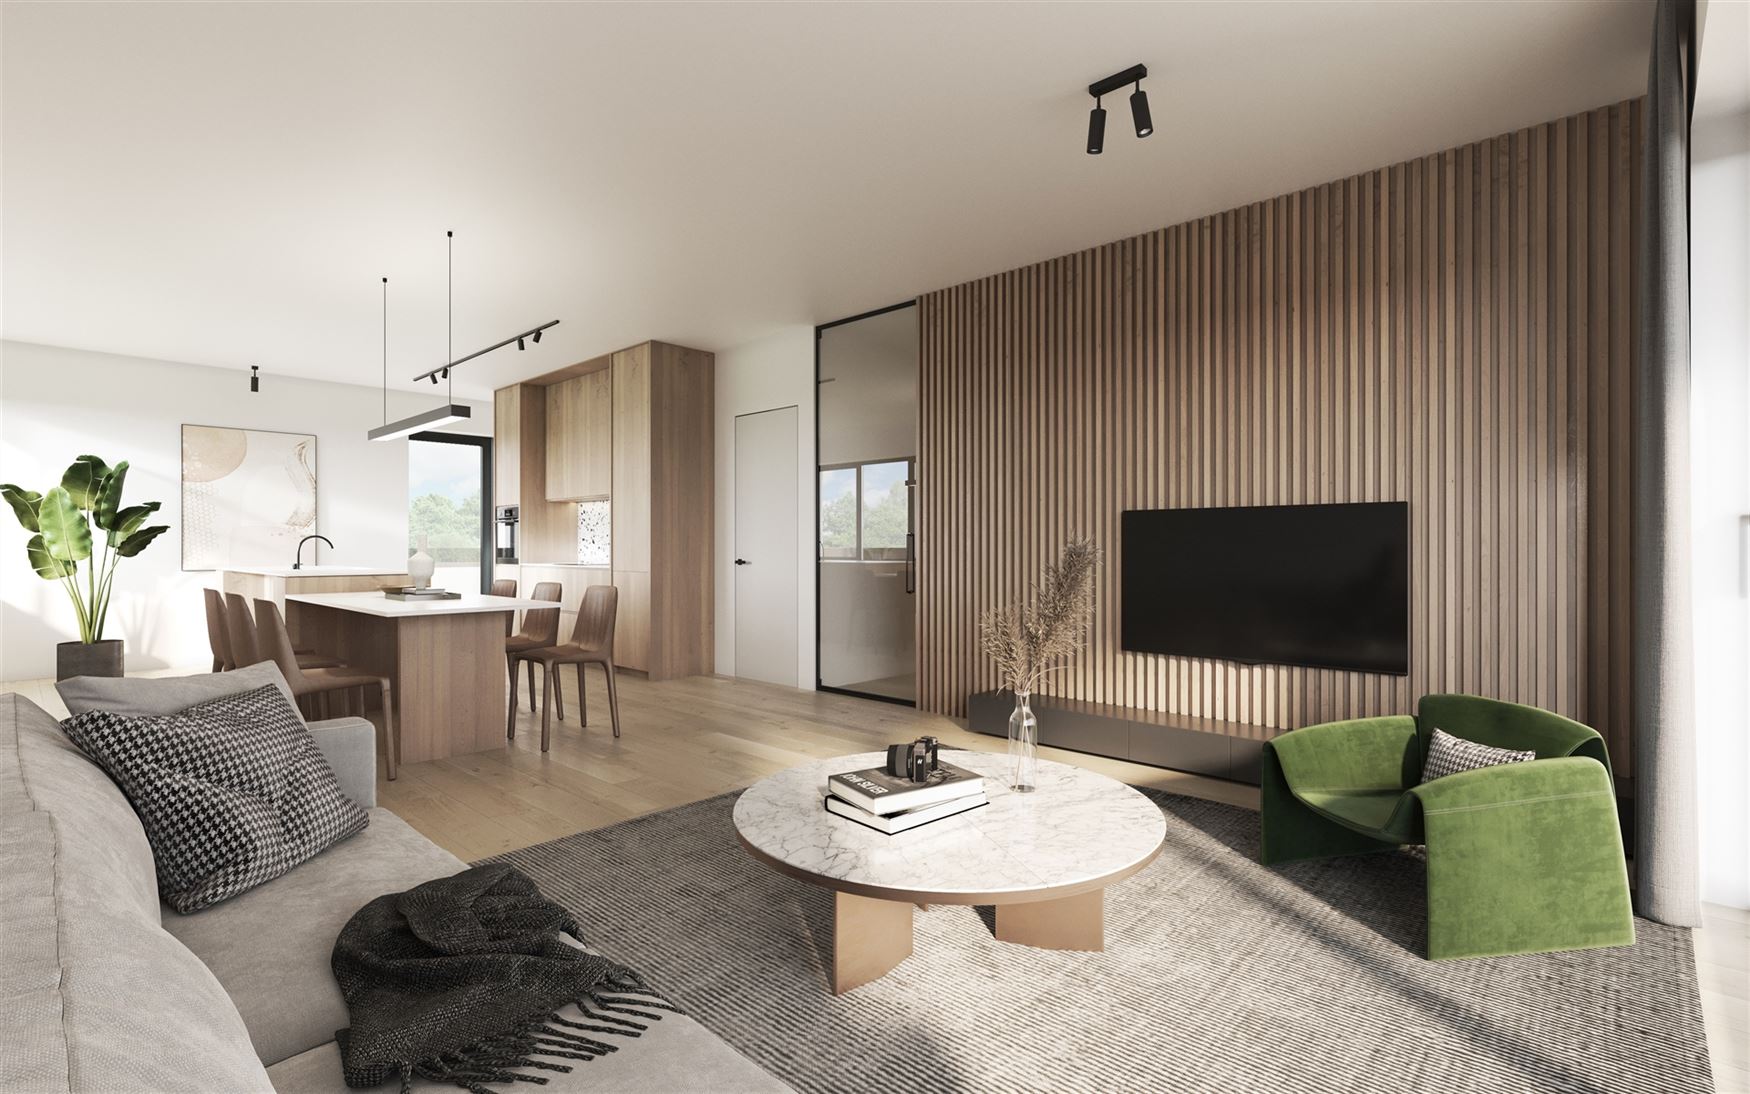 Op zoek naar een ruim, nieuw appartement? In De Baarlekorf staat Residentie 'Sophora' garant voor alle comfort. Je beschikt over 1 slaapkamer, een zui...